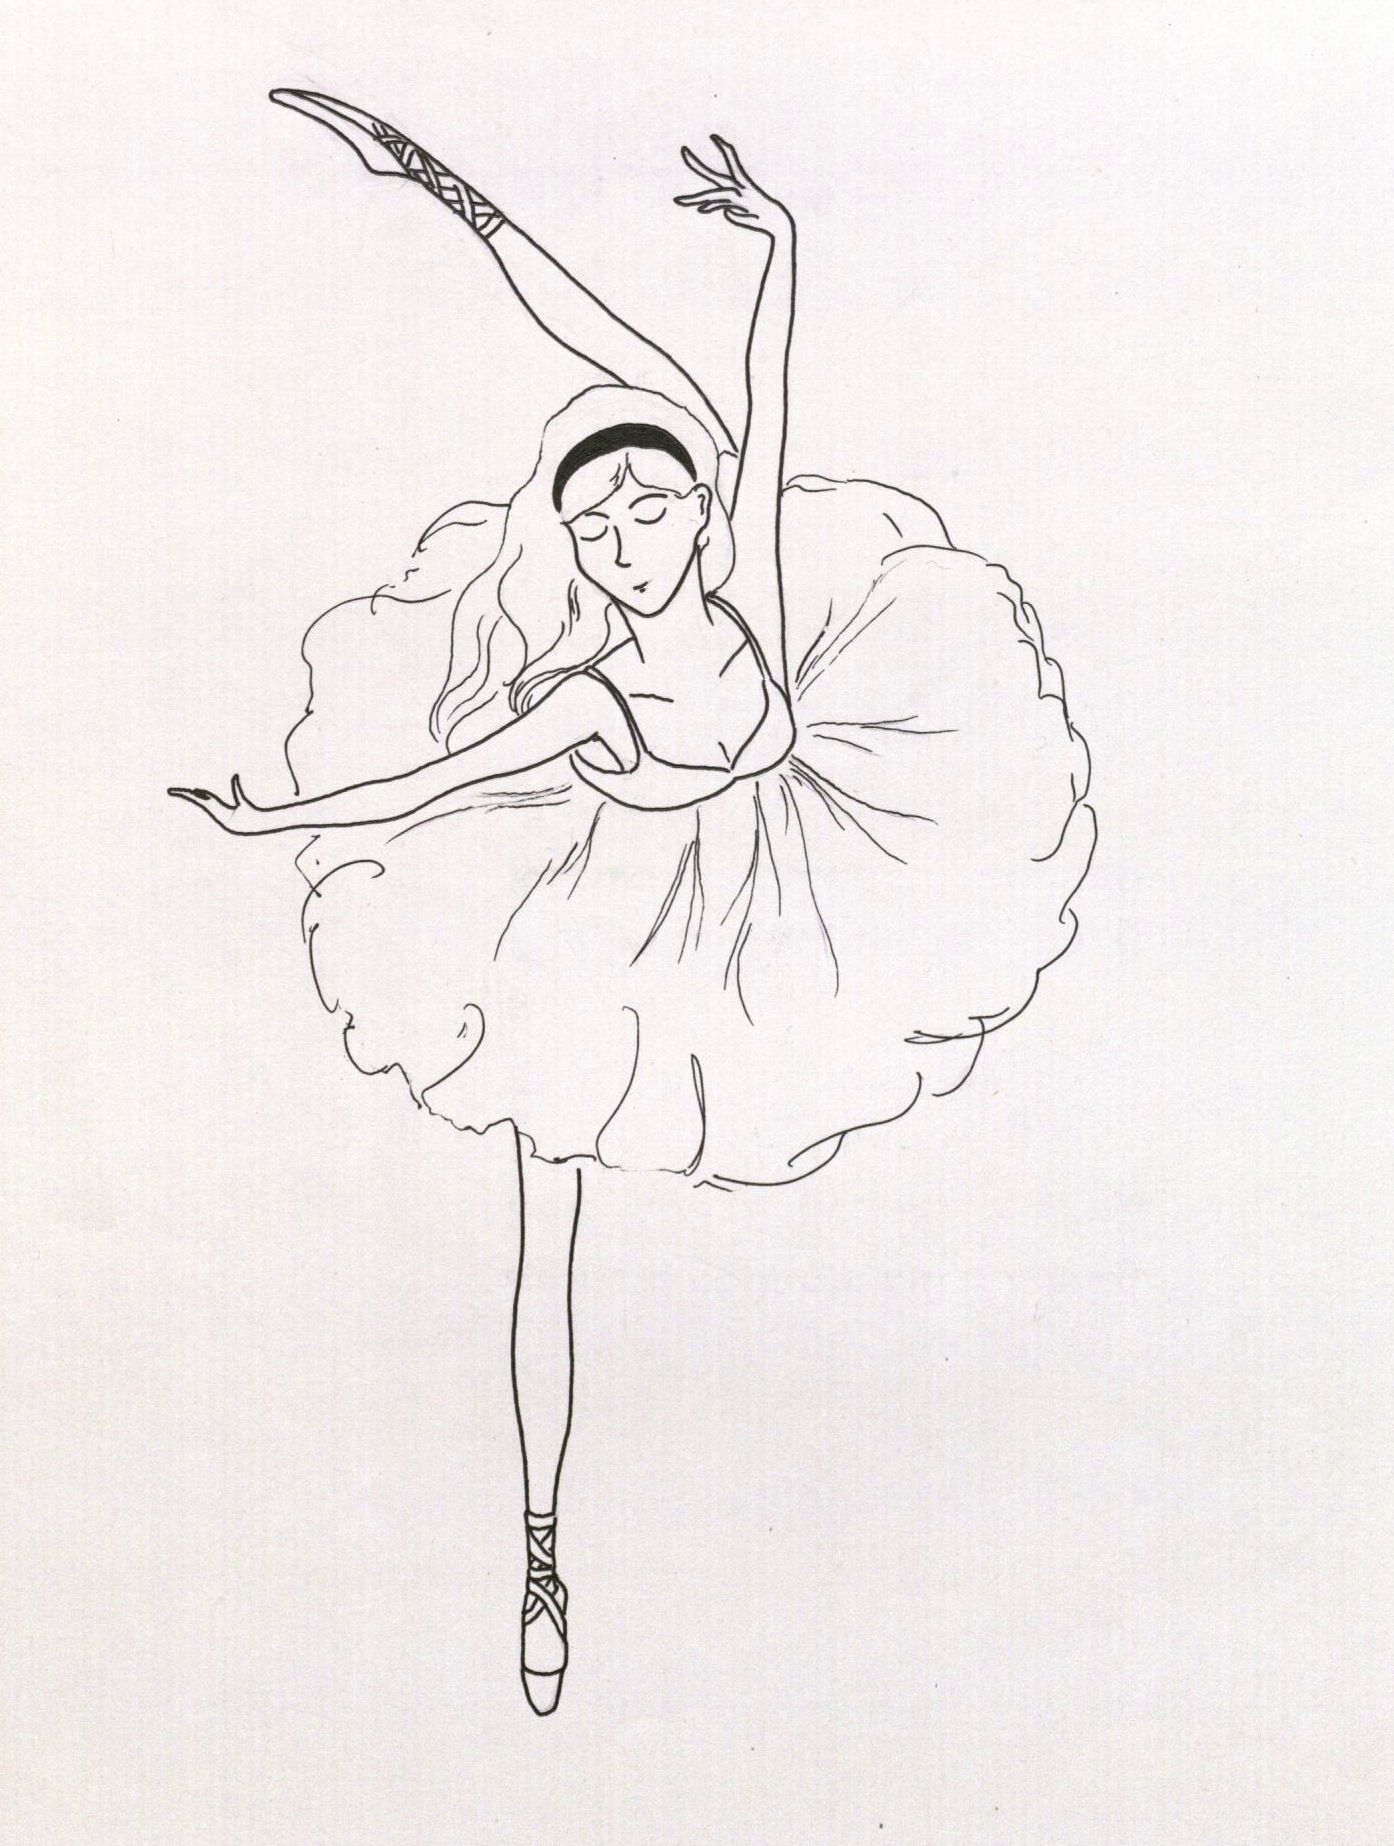 Балерина для срисовки